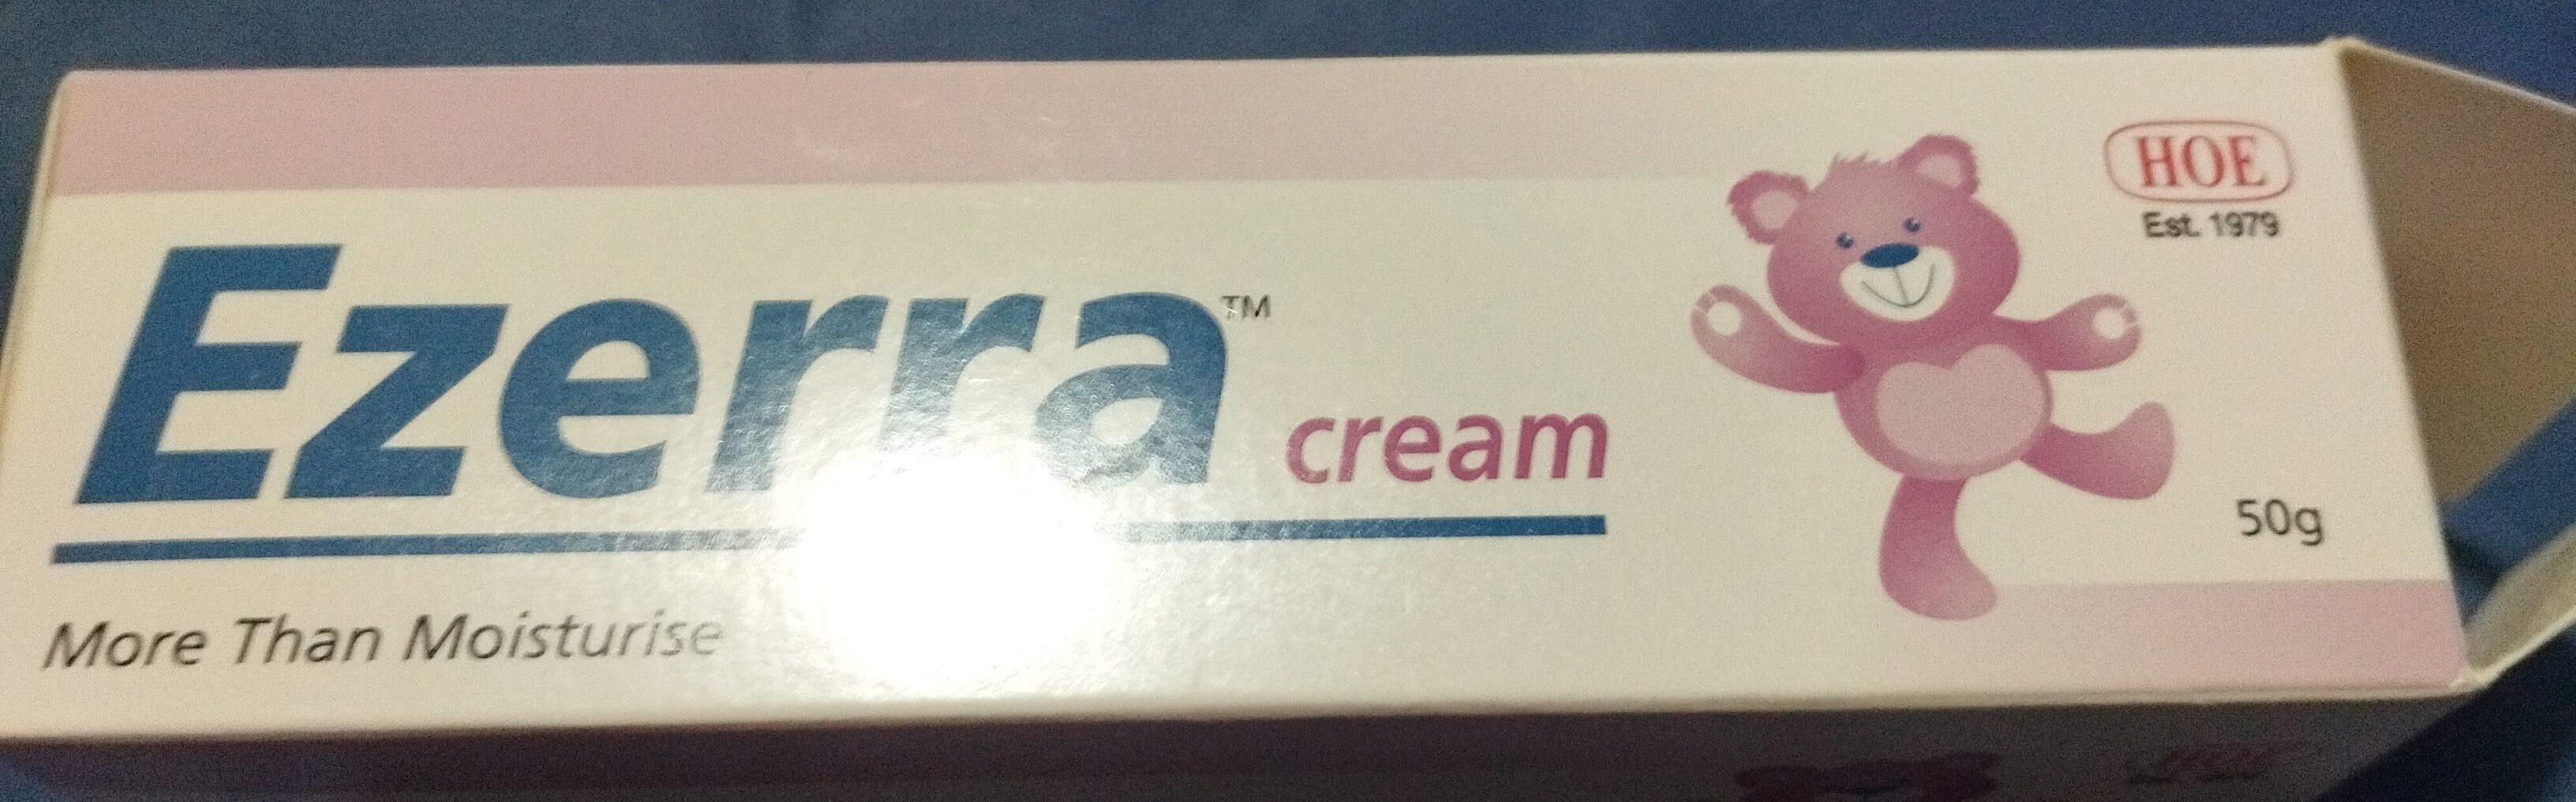 Ezerra cream - Product - th